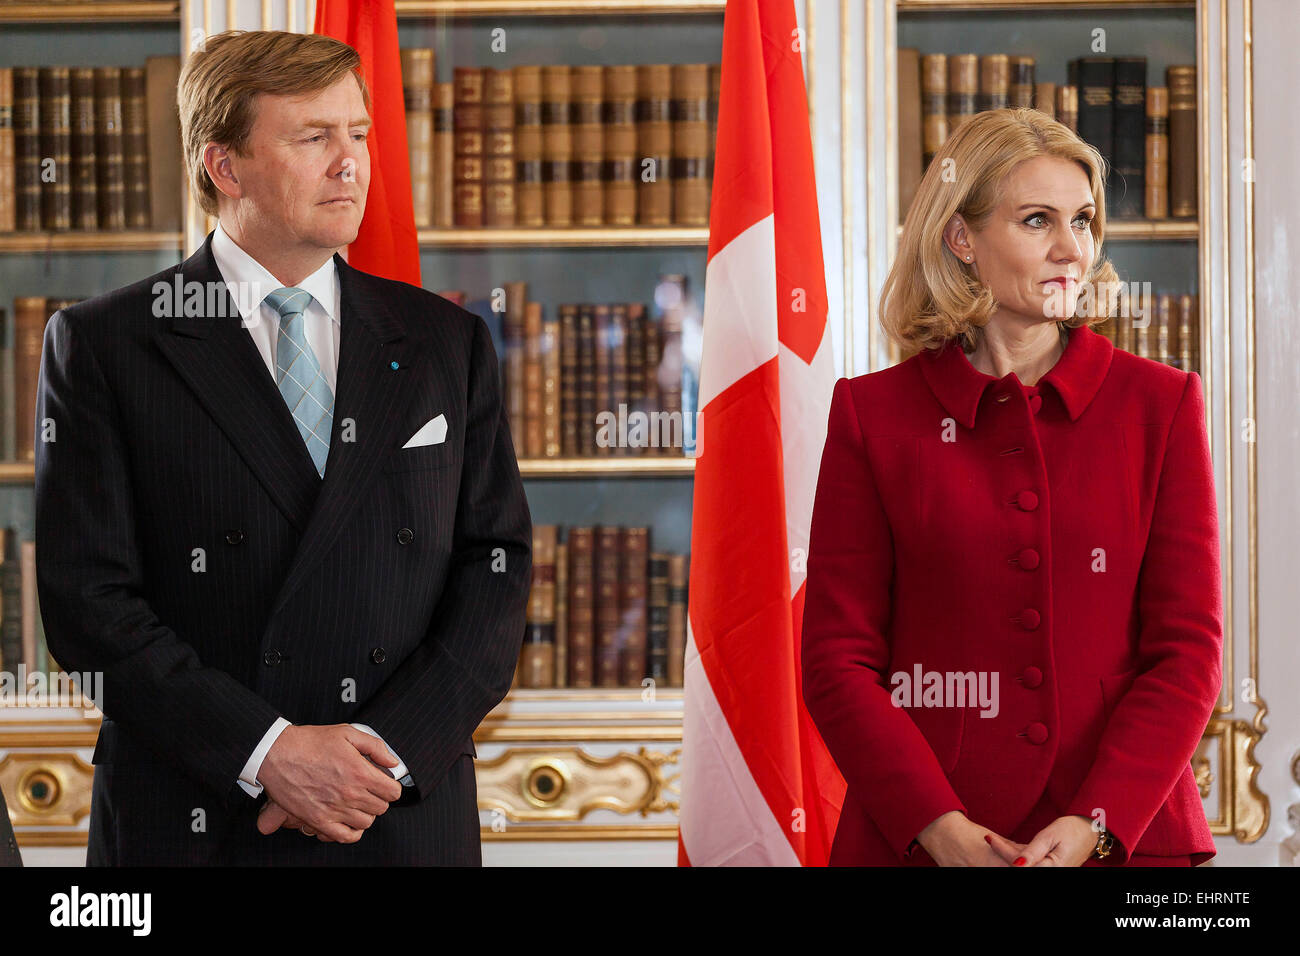 Copenhague, Danemark. 17 mars, 2015. Roi néerlandais Willem-Alexander et PM Danois, Helle Thorning-Schmidt, photographié au cours de la royal des couples visite d'État au Danemark Crédit : OJPHOTOS/Alamy Live News Banque D'Images